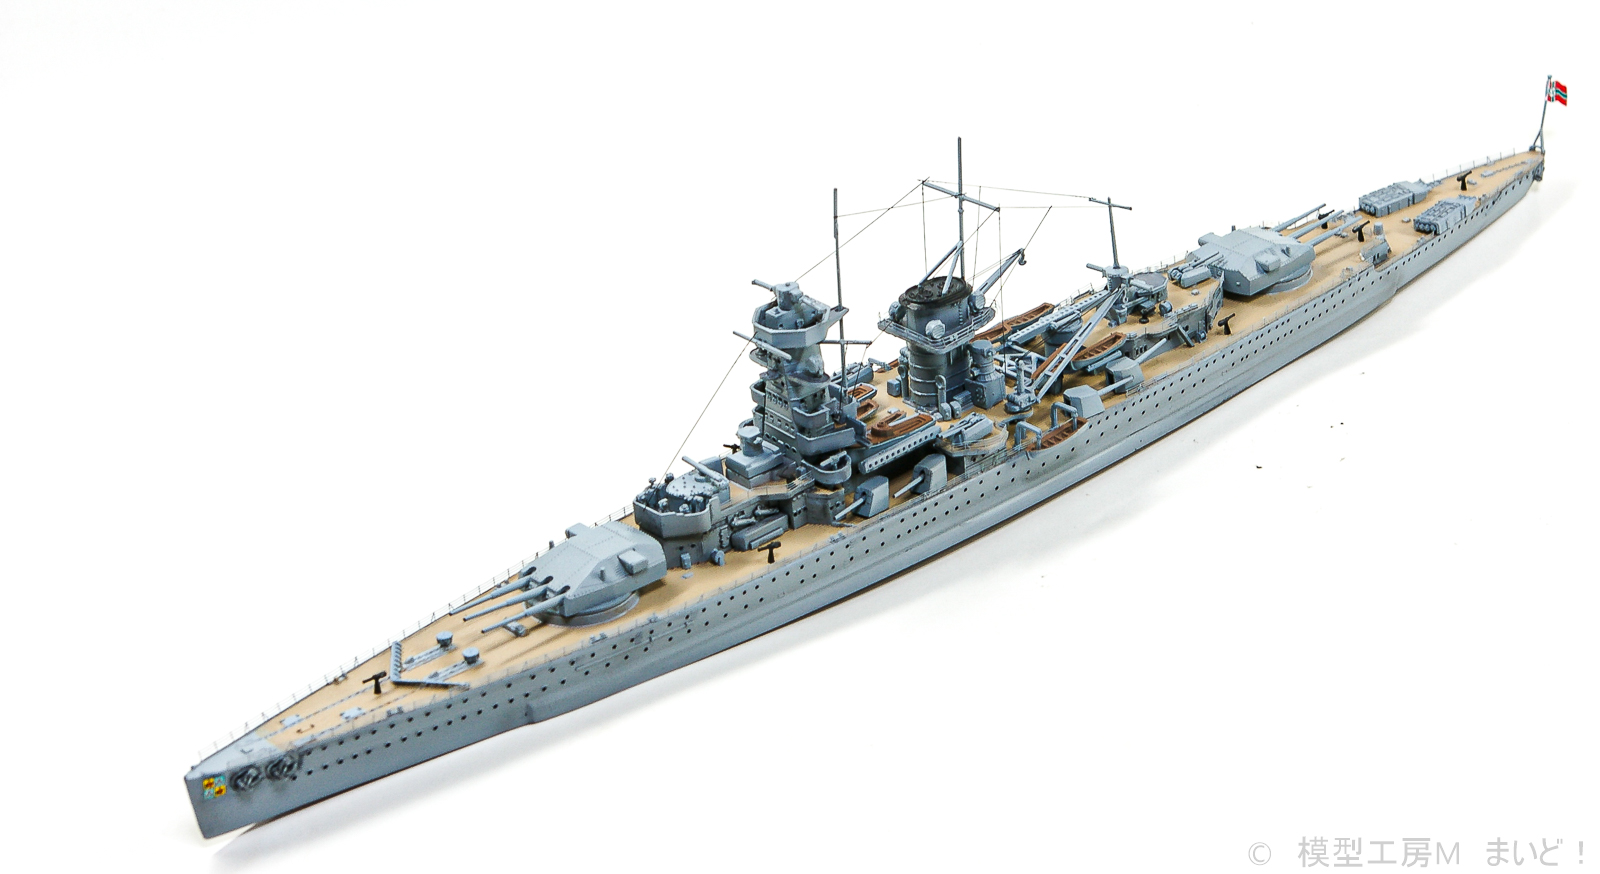 1/350 ICM ドイツ海軍 戦艦 グローサー・クルフュルスト (ピットロード 